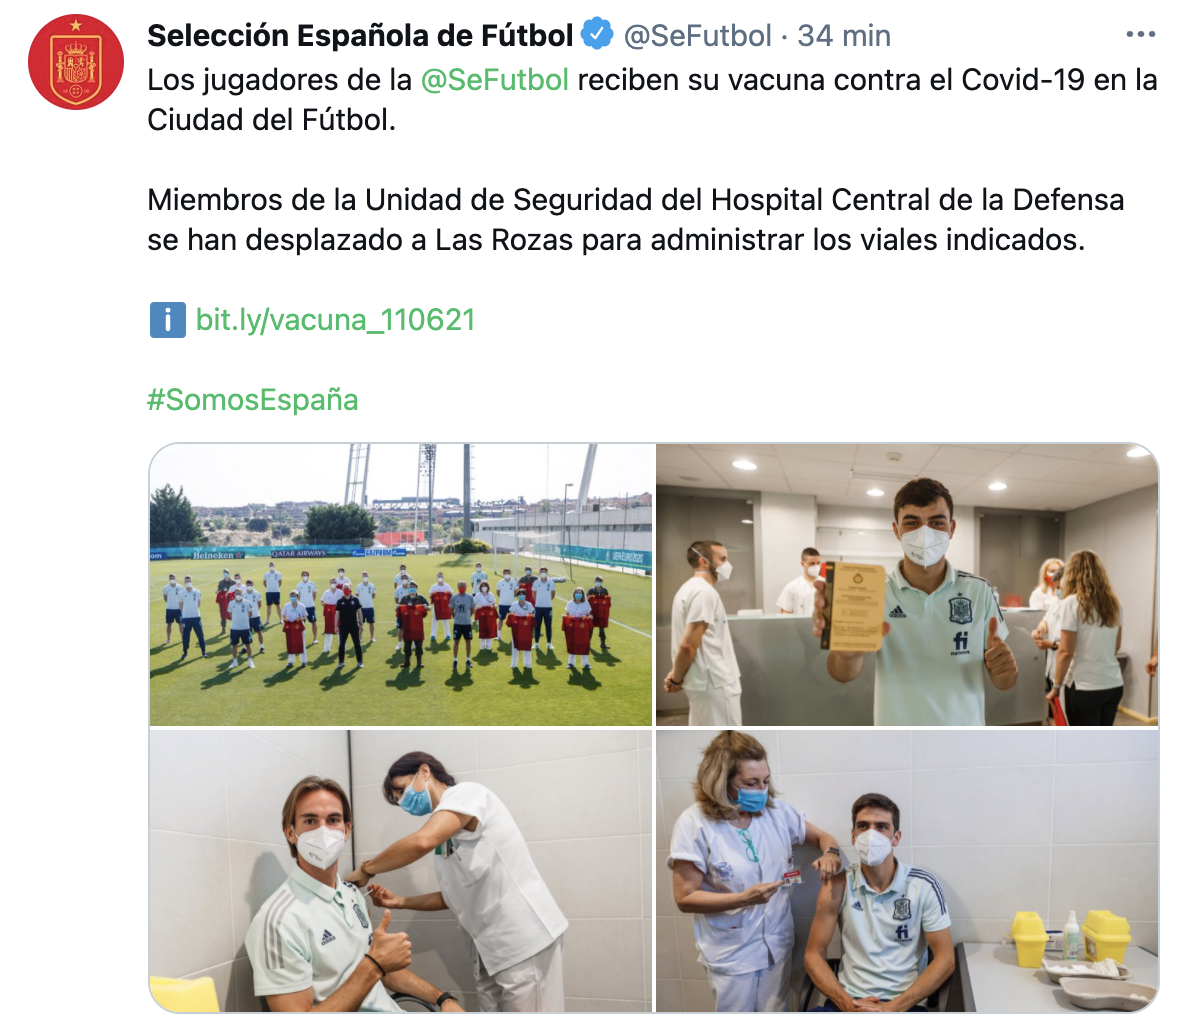 Vacunacion seleccion espanola fútbol TUIT